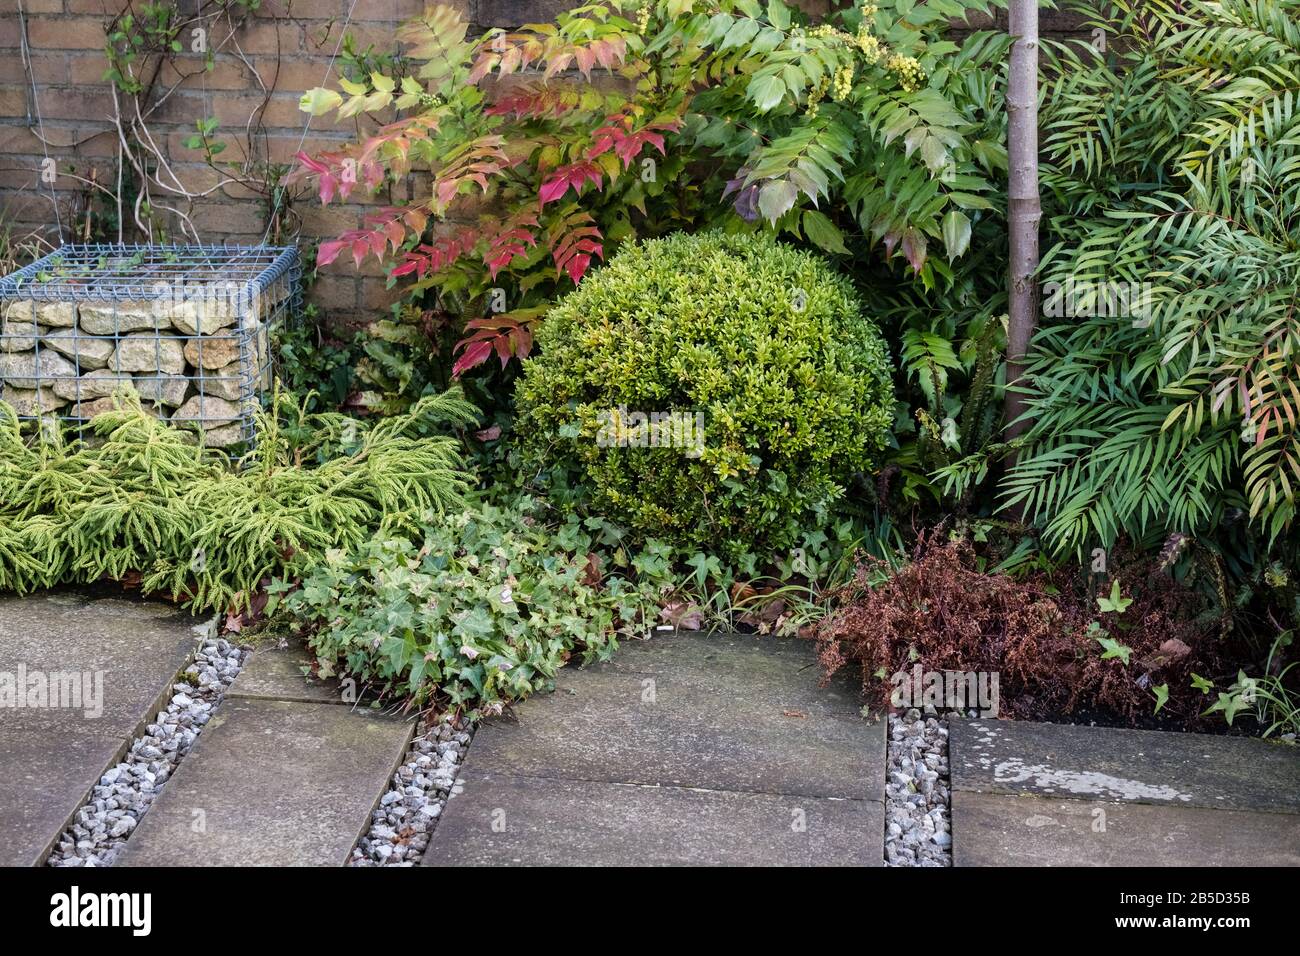 Un petit jardin de cour, avec des plantes vergeantes pour la couleur, la texture et la structure pendant l'hiver et le printemps. Fini avec des dalles de pavage et un gabion. Banque D'Images